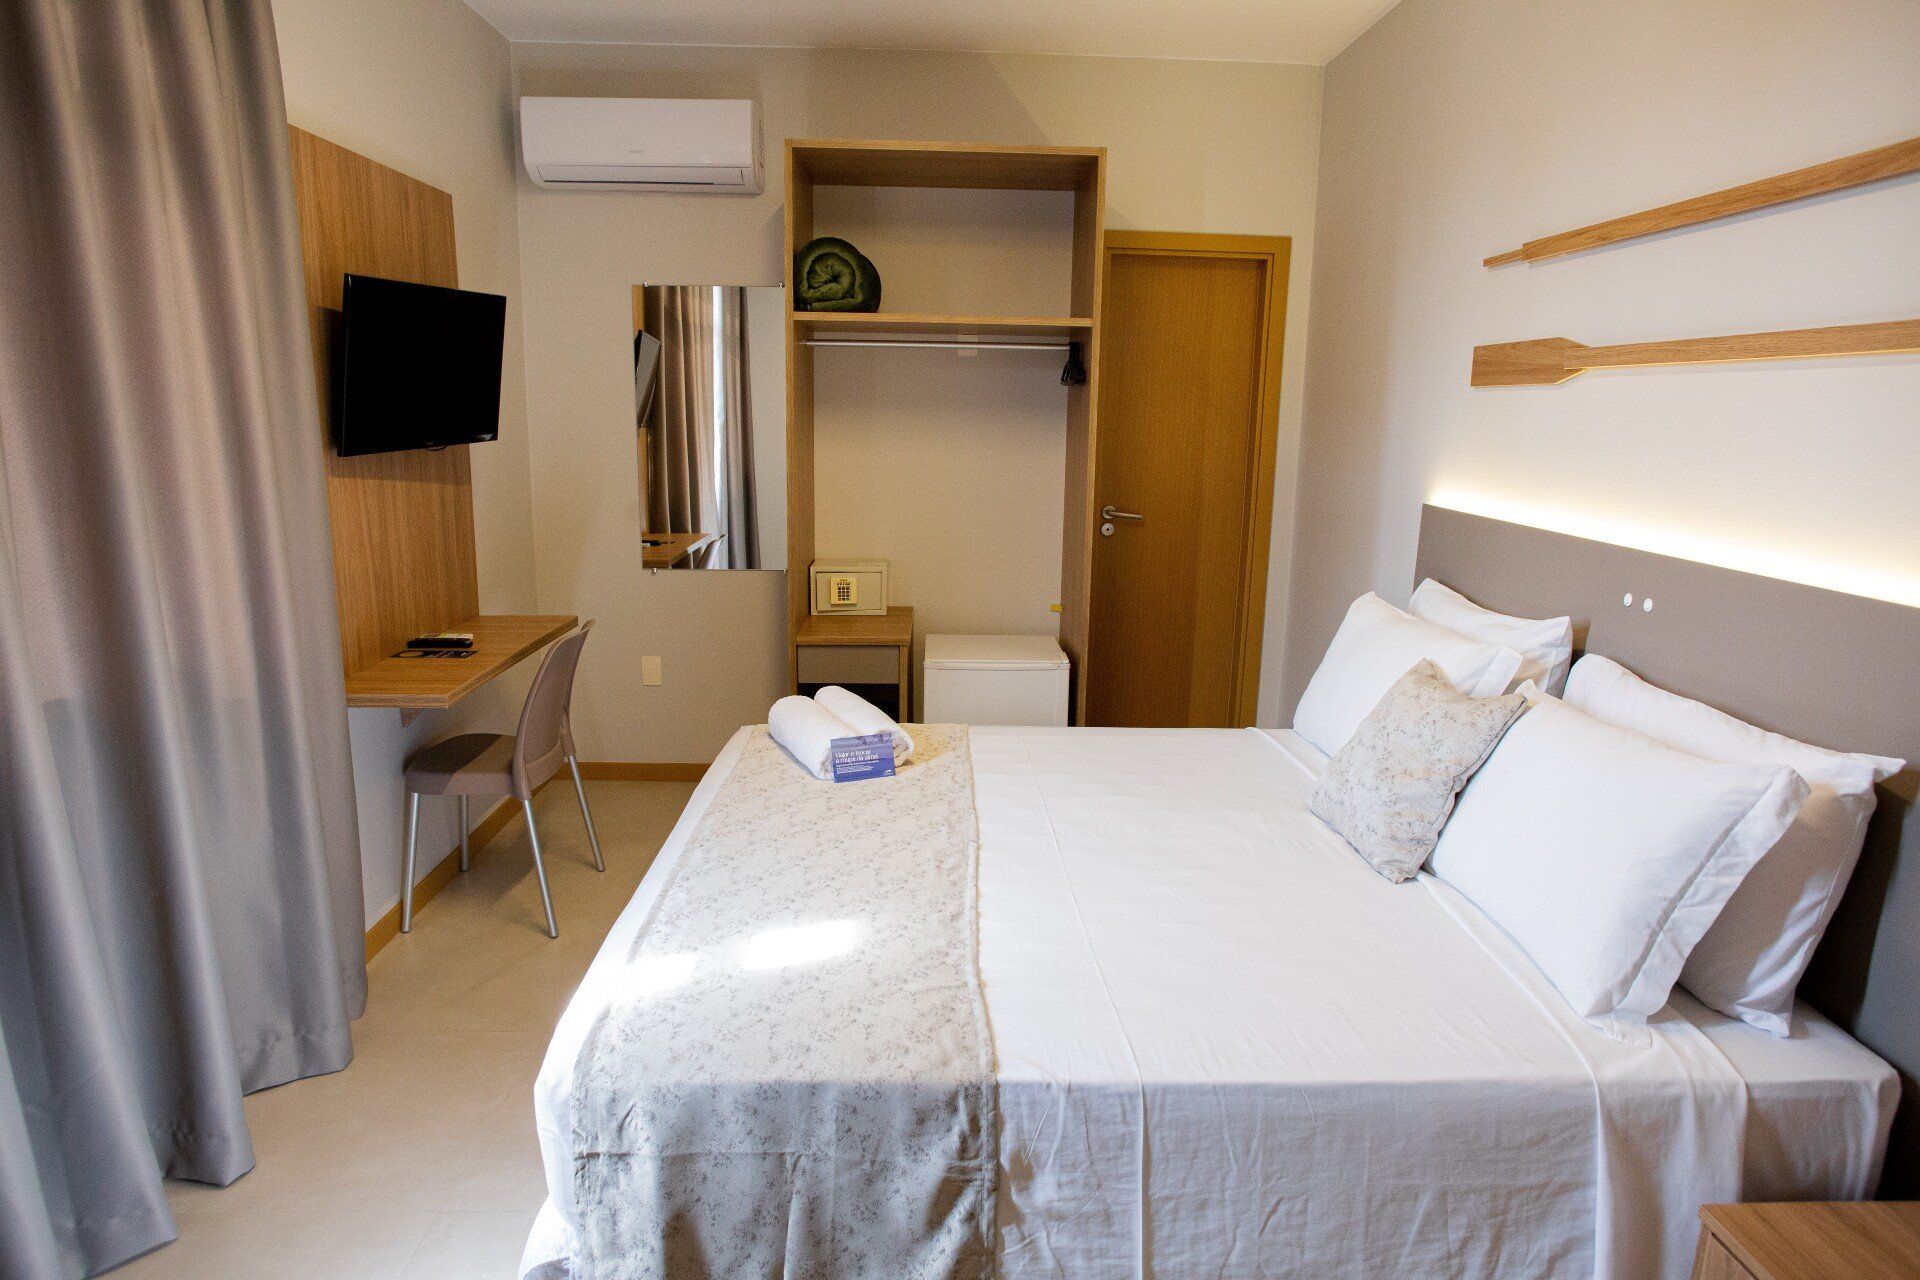 Um quarto de hotel com cama, mesa, televisão e espelho.